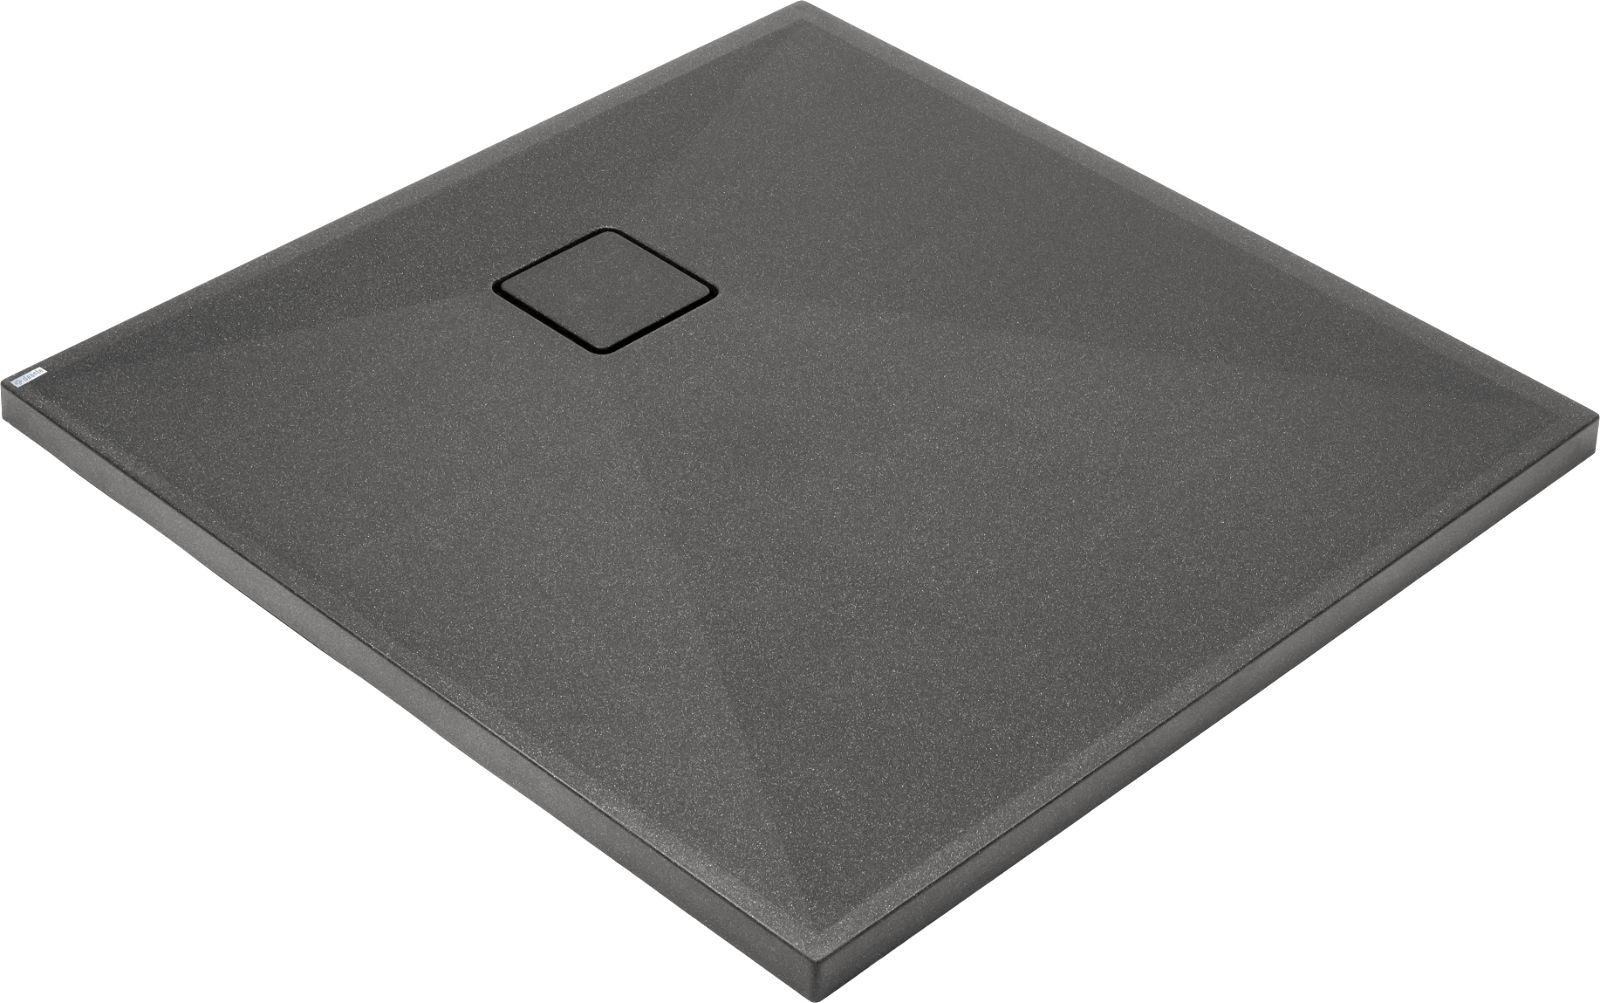 Granite shower tray, square, 90x90 cm - KQR_T41B - Główne zdjęcie produktowe